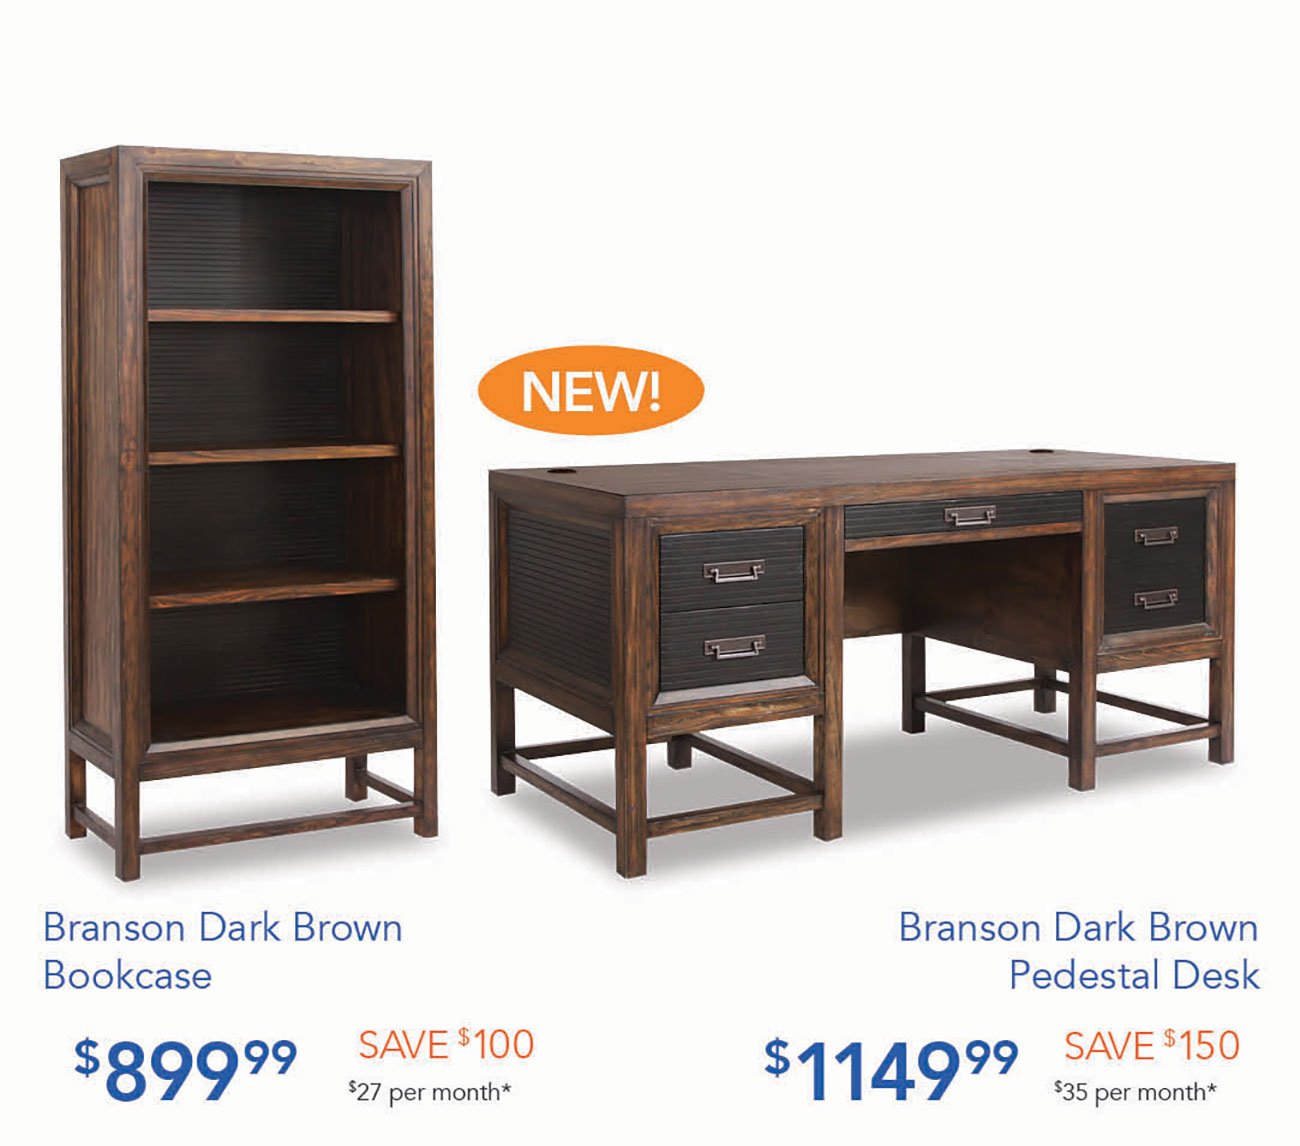  Branson Dark Brown Branson Dark Brown Bookcase Pedestal Desk $89999 $27 per month* $ 1 1 49 99 $35 per month* 